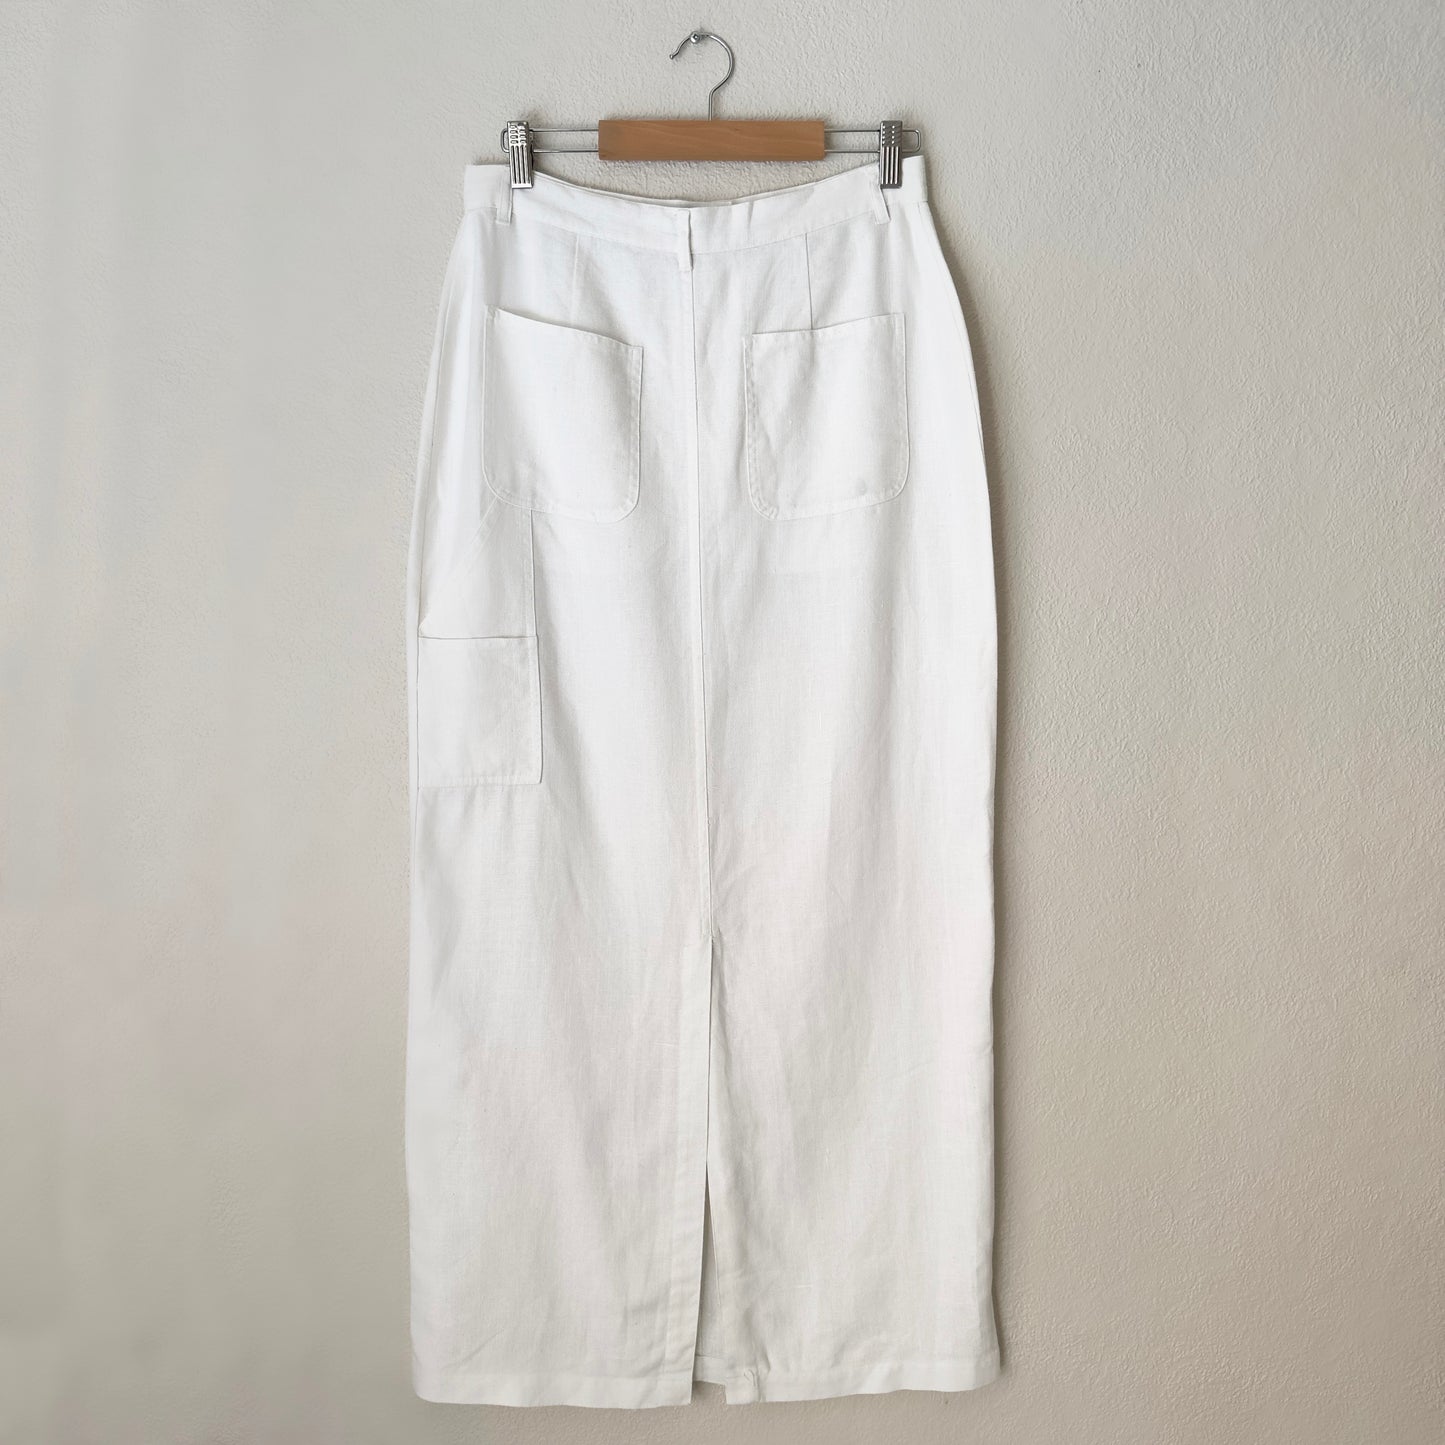 Linen Pencil Skirt - 100% Linen